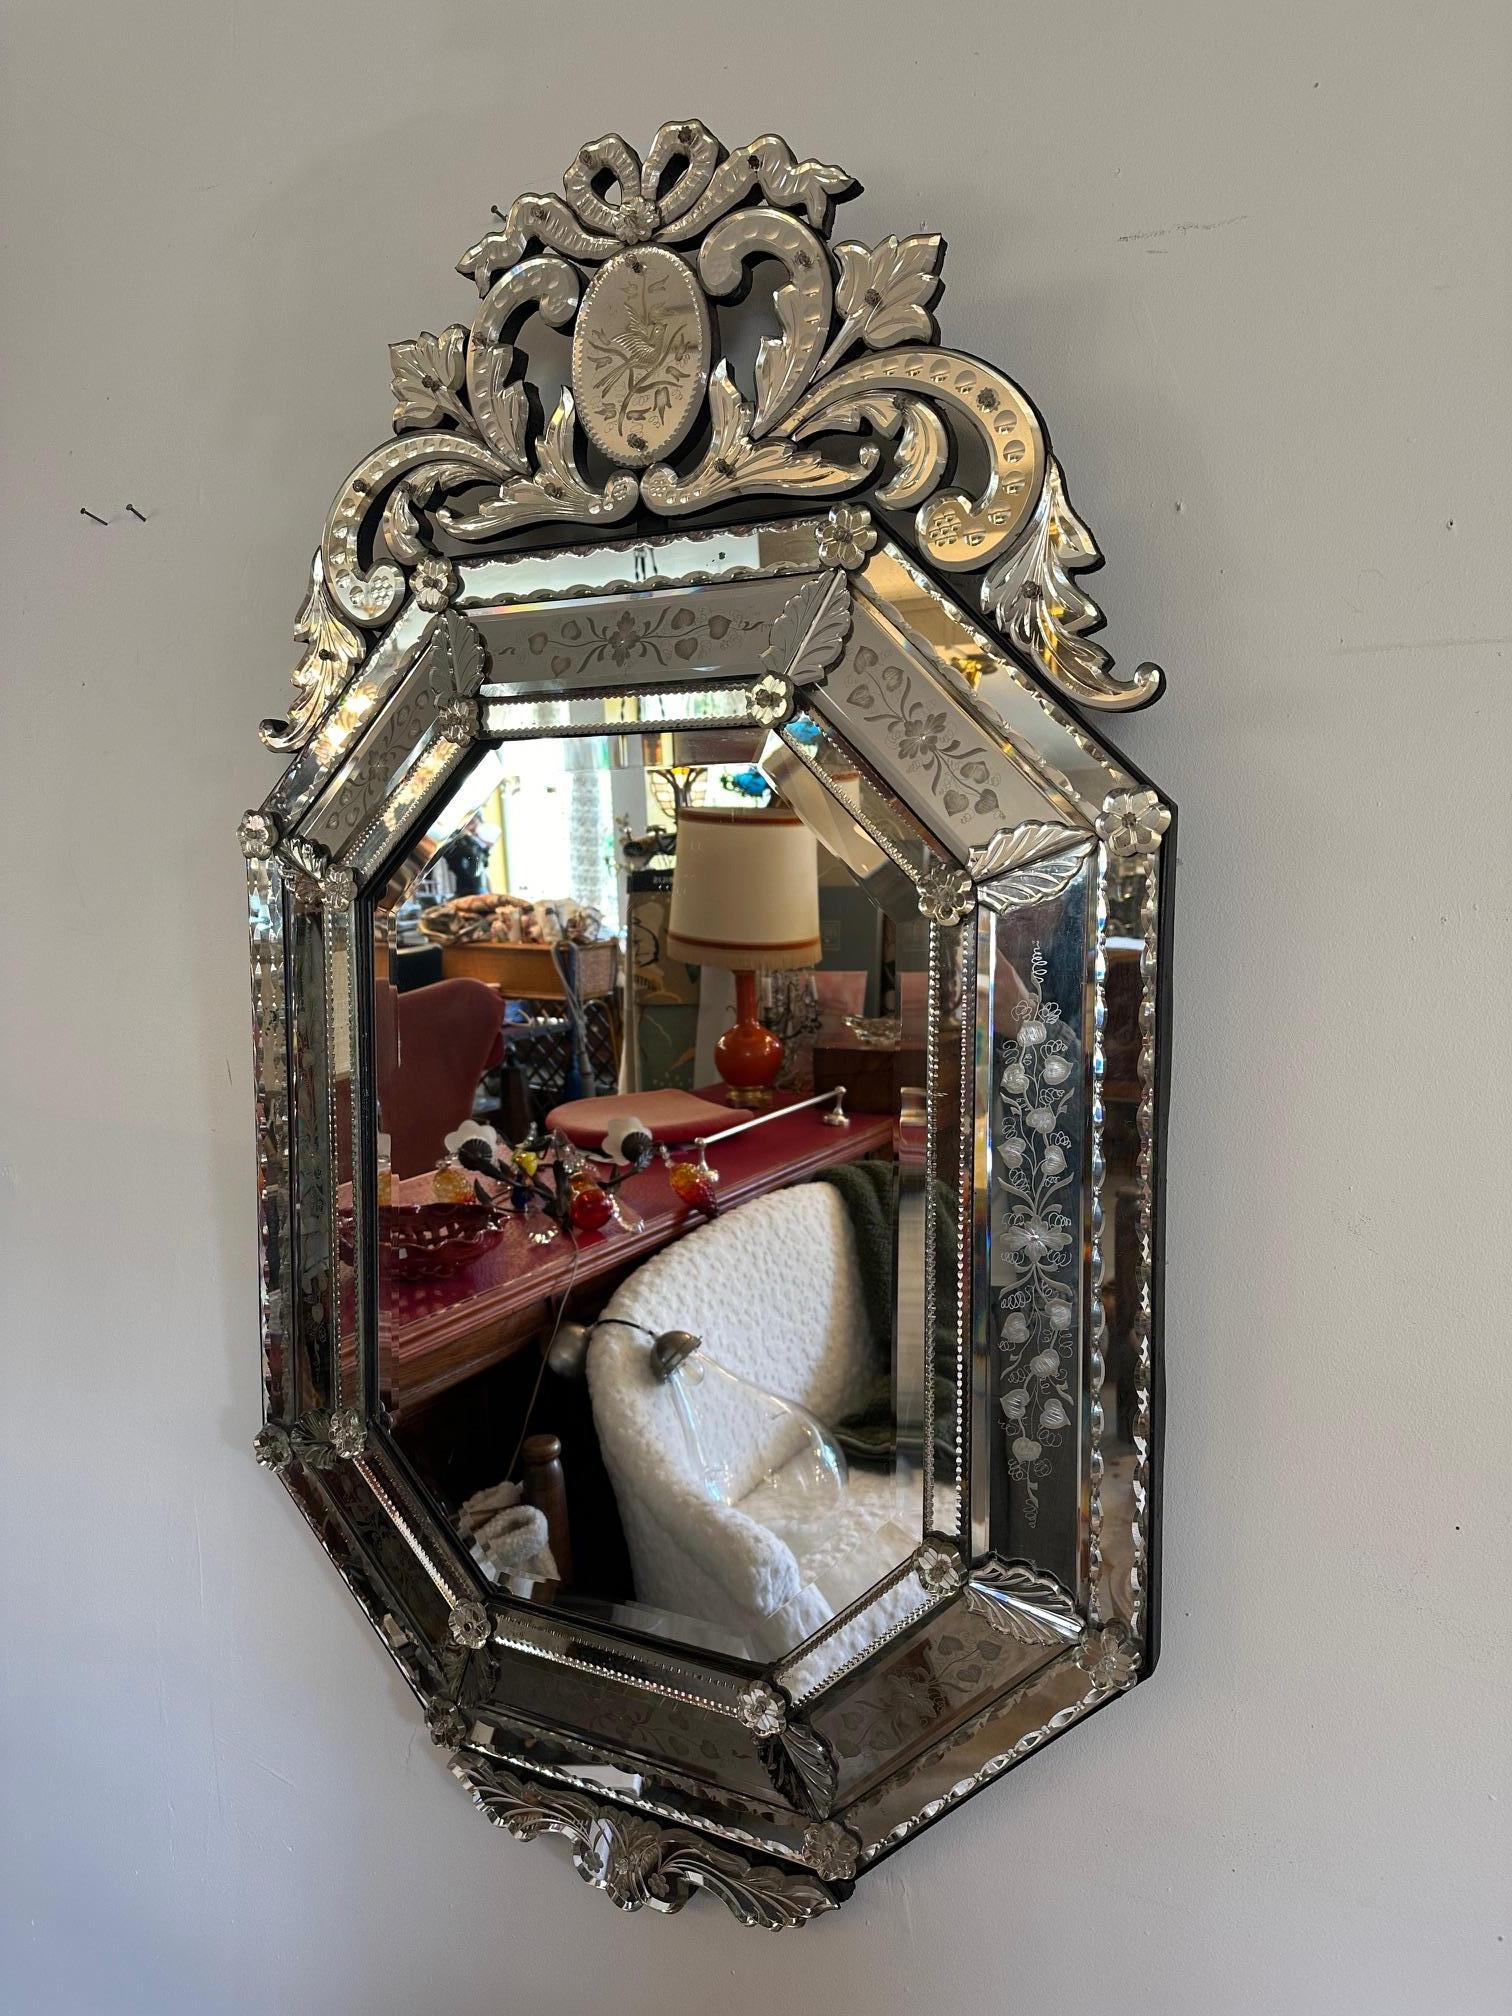 19ème siècle Magnifique miroir octogonal vénitien datant de la période Napoléon III (années 1870), une véritable antiquité !
Dans un état remarquable pour son âge. Seule la moitié d'une feuille de verre est cassée (possibilité de la changer). Miroir